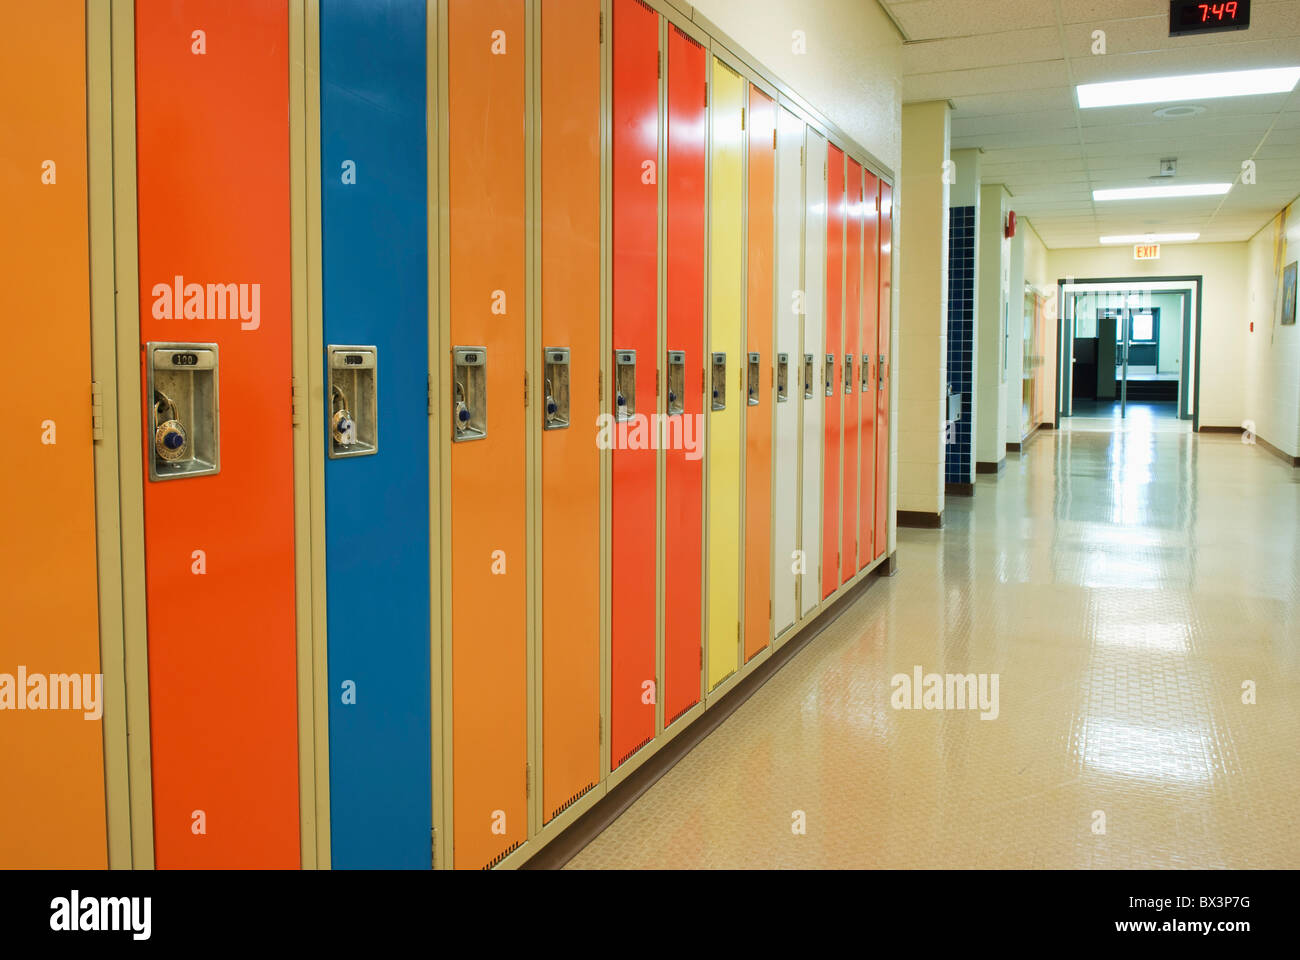 Une rangée de casiers dans un couloir de l'école ; Camrose, Alberta, Canada Banque D'Images